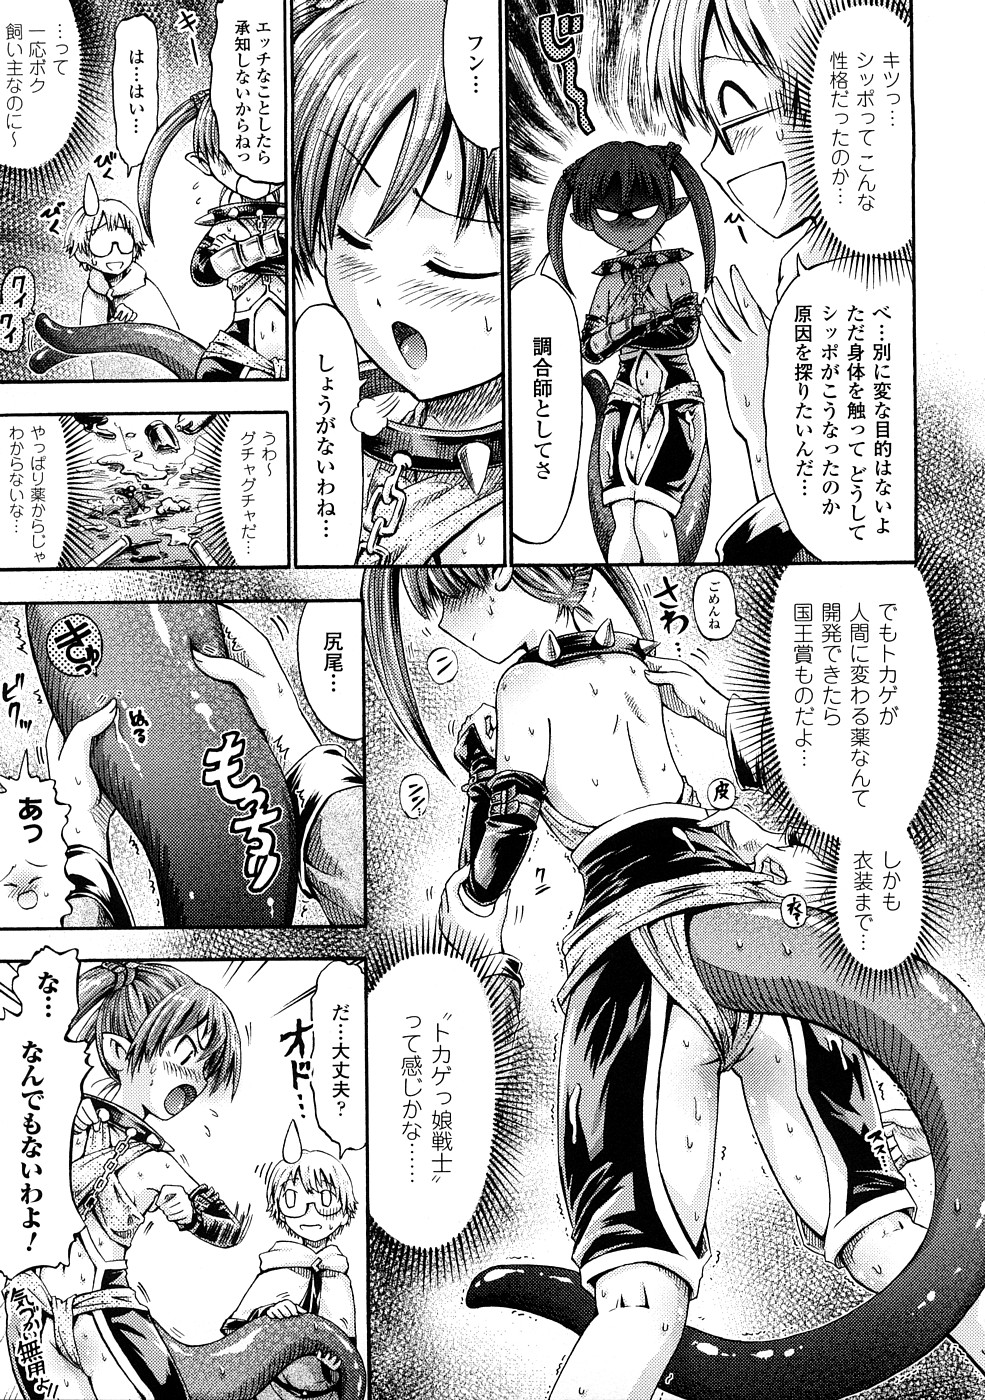 [Horitomo] Fairy Tales page 30 full